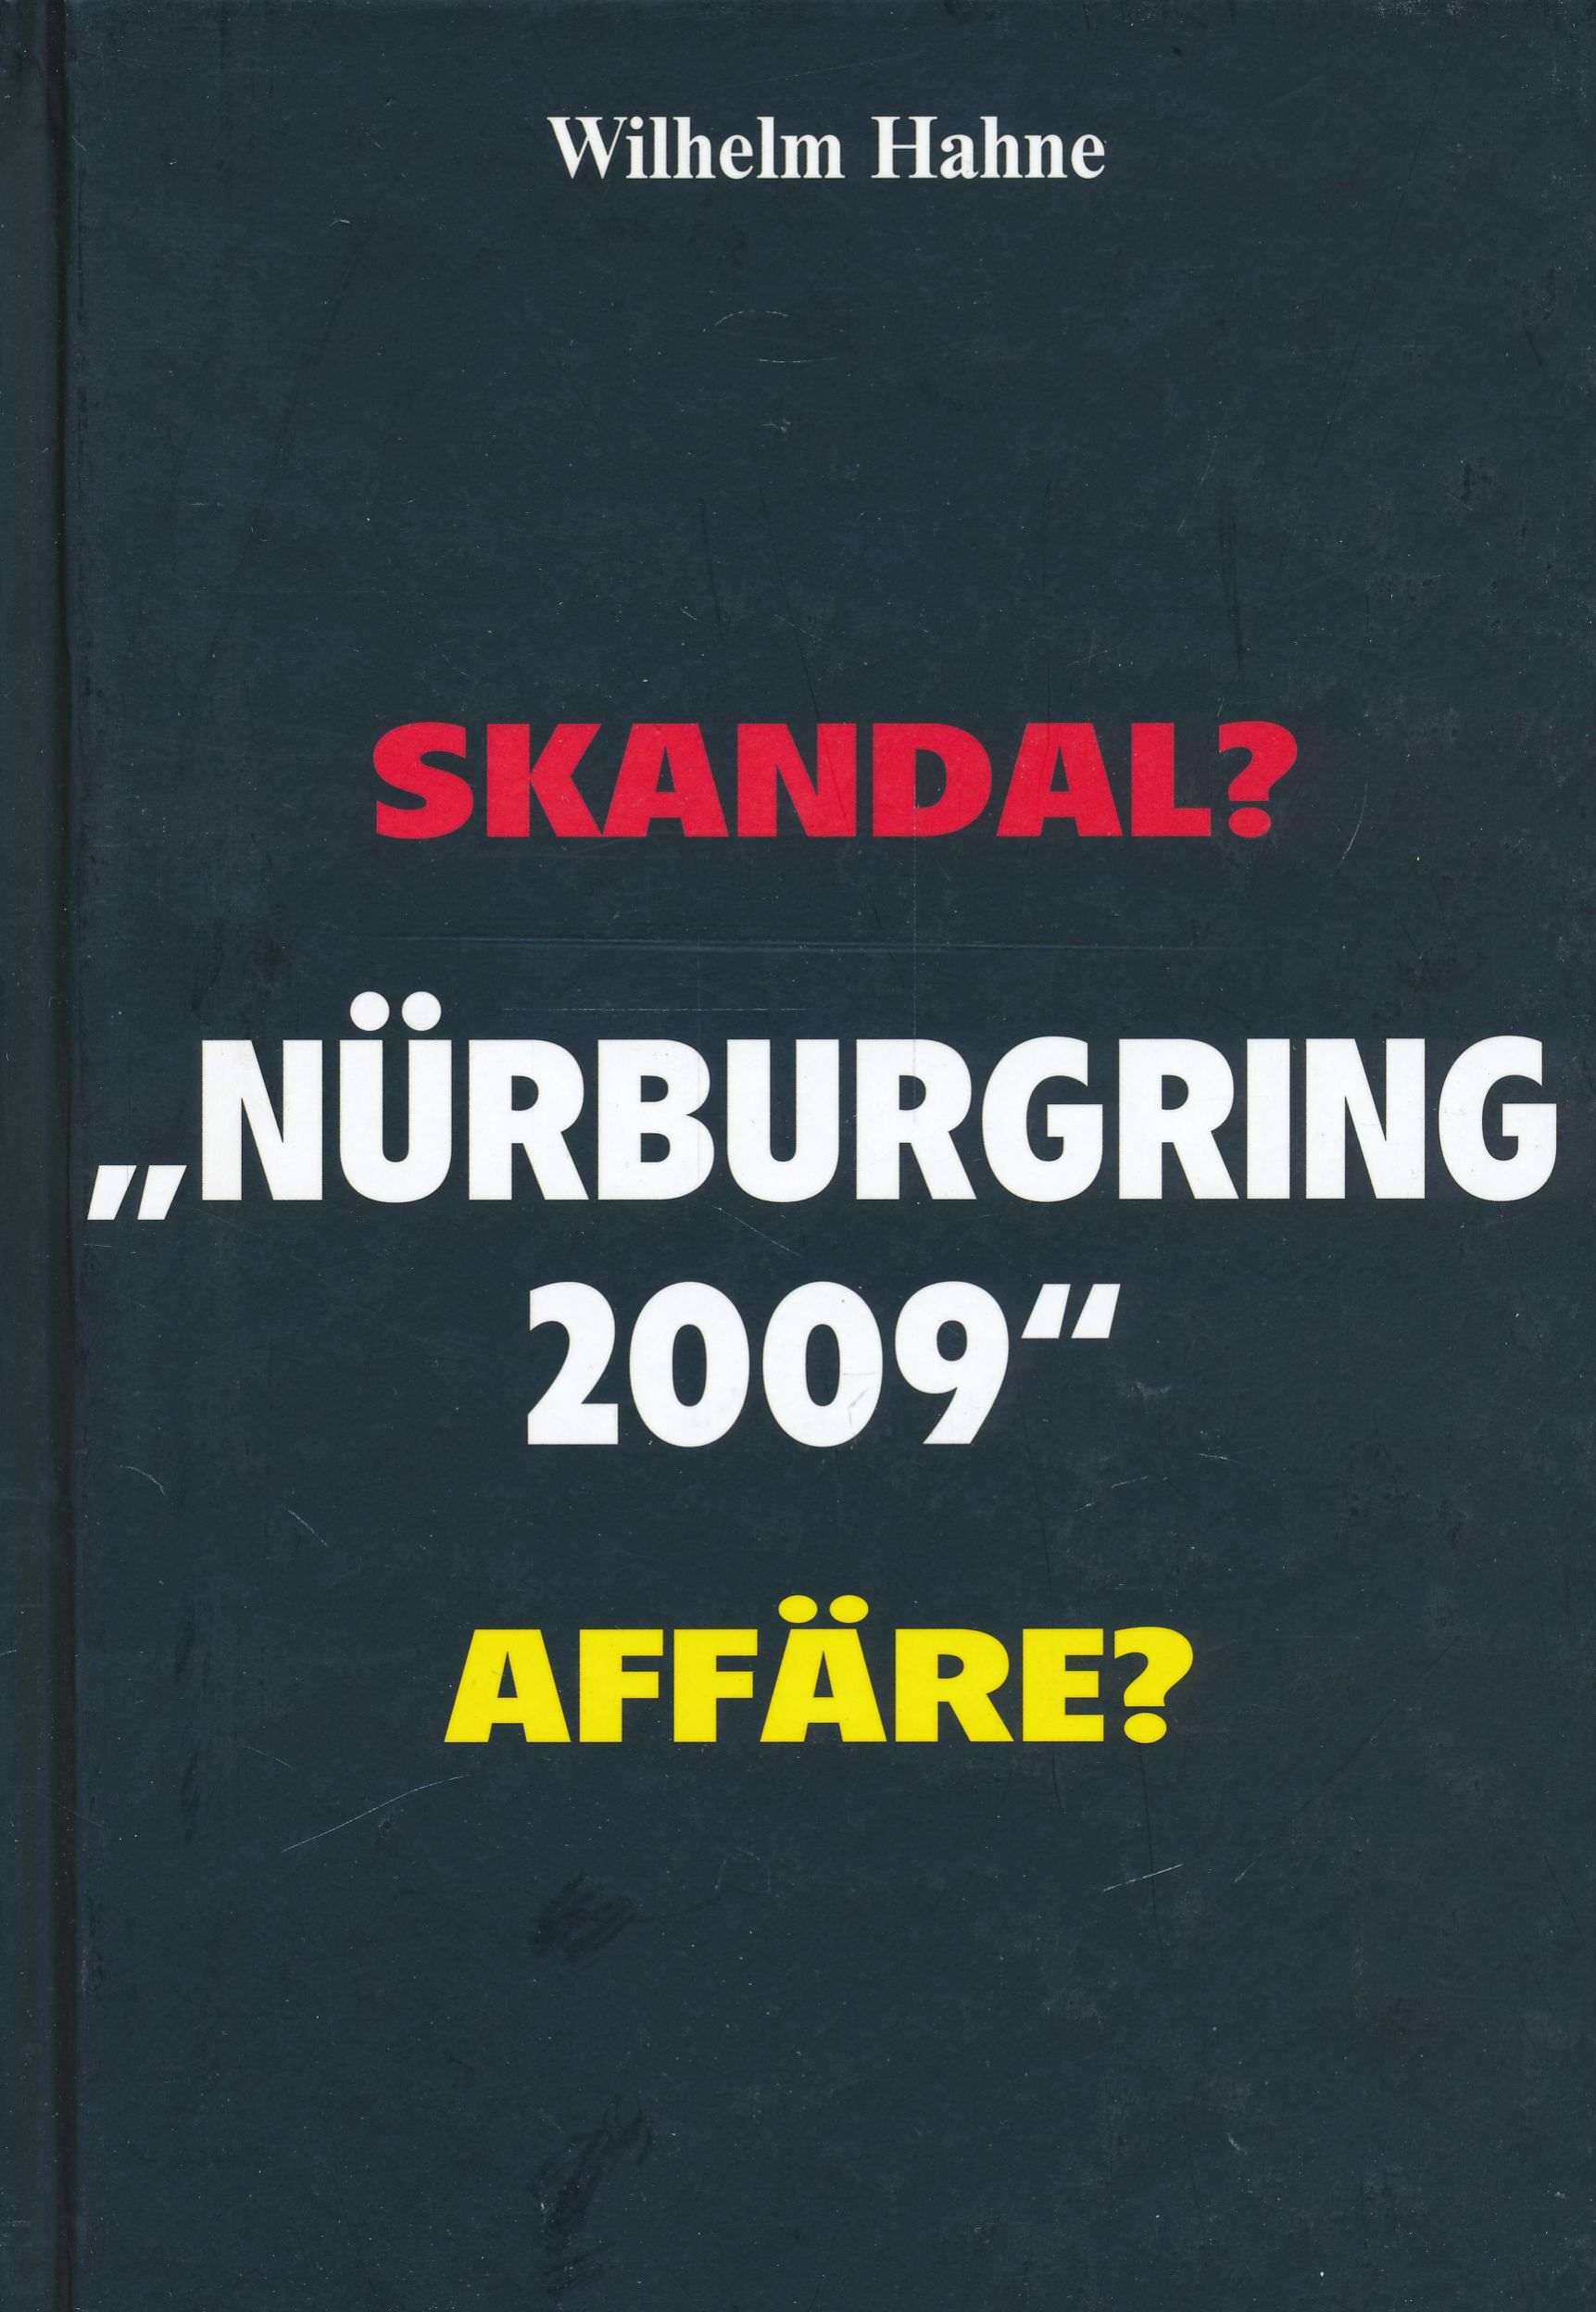 Nürburgring 2009: Skandal? Affäre?. - Hahne, Wilhelm